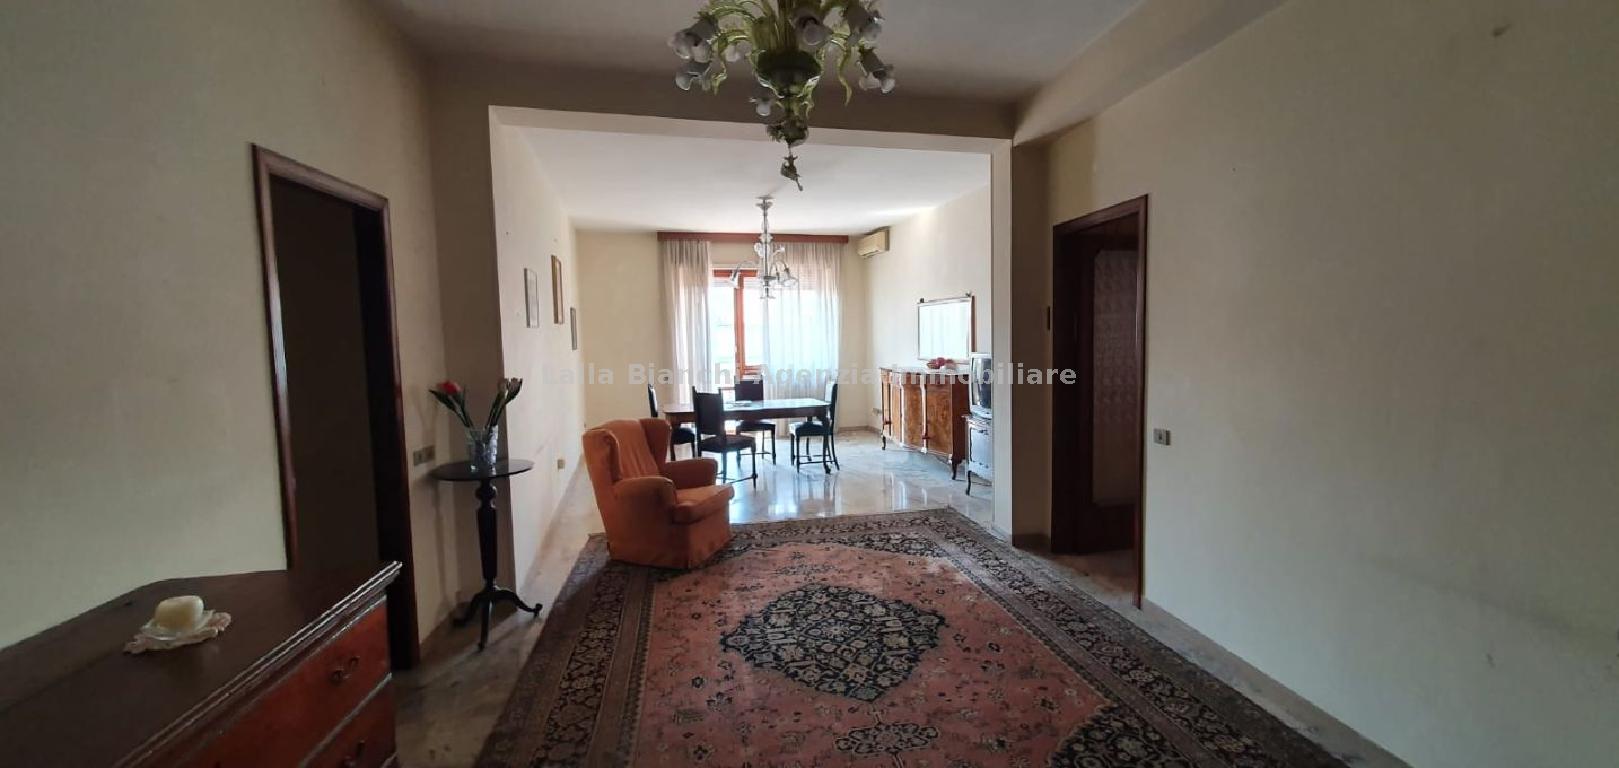 Appartamento in vendita in via marsala  46, Pesaro